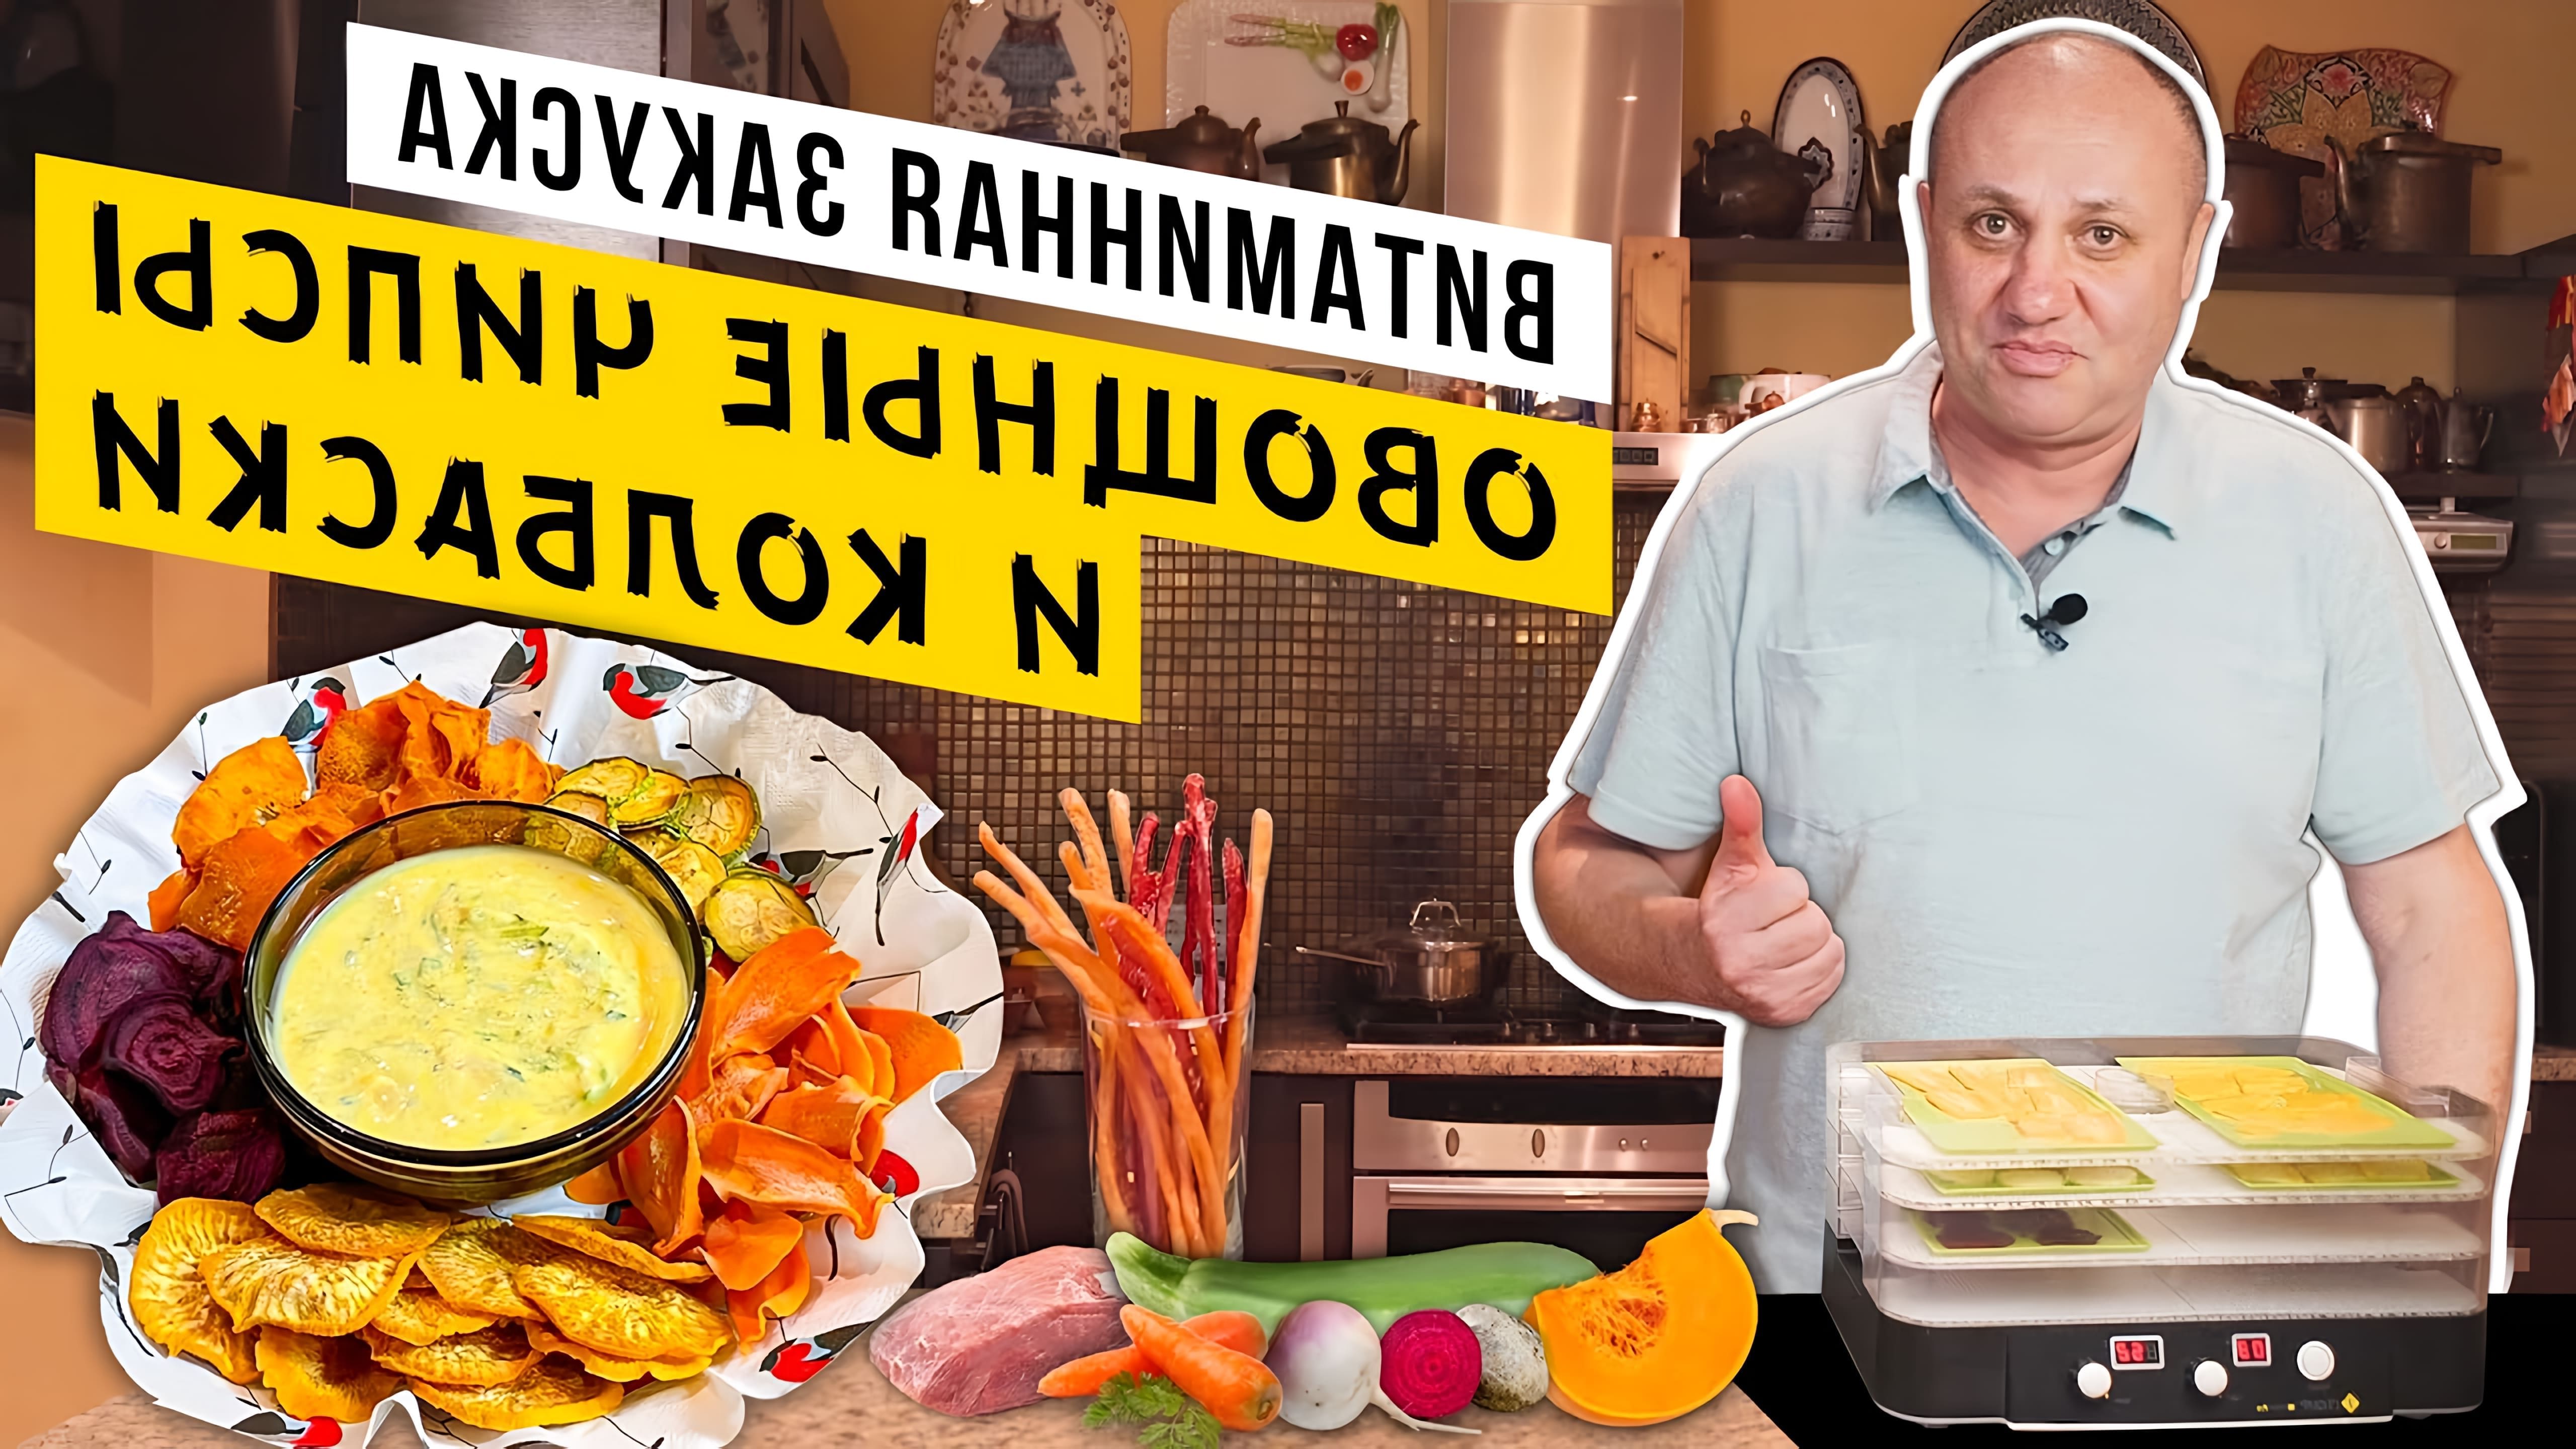 В этом видео демонстрируется процесс приготовления двух закусок в домашних условиях: овощных чипсов и тонких вяленых колбасок